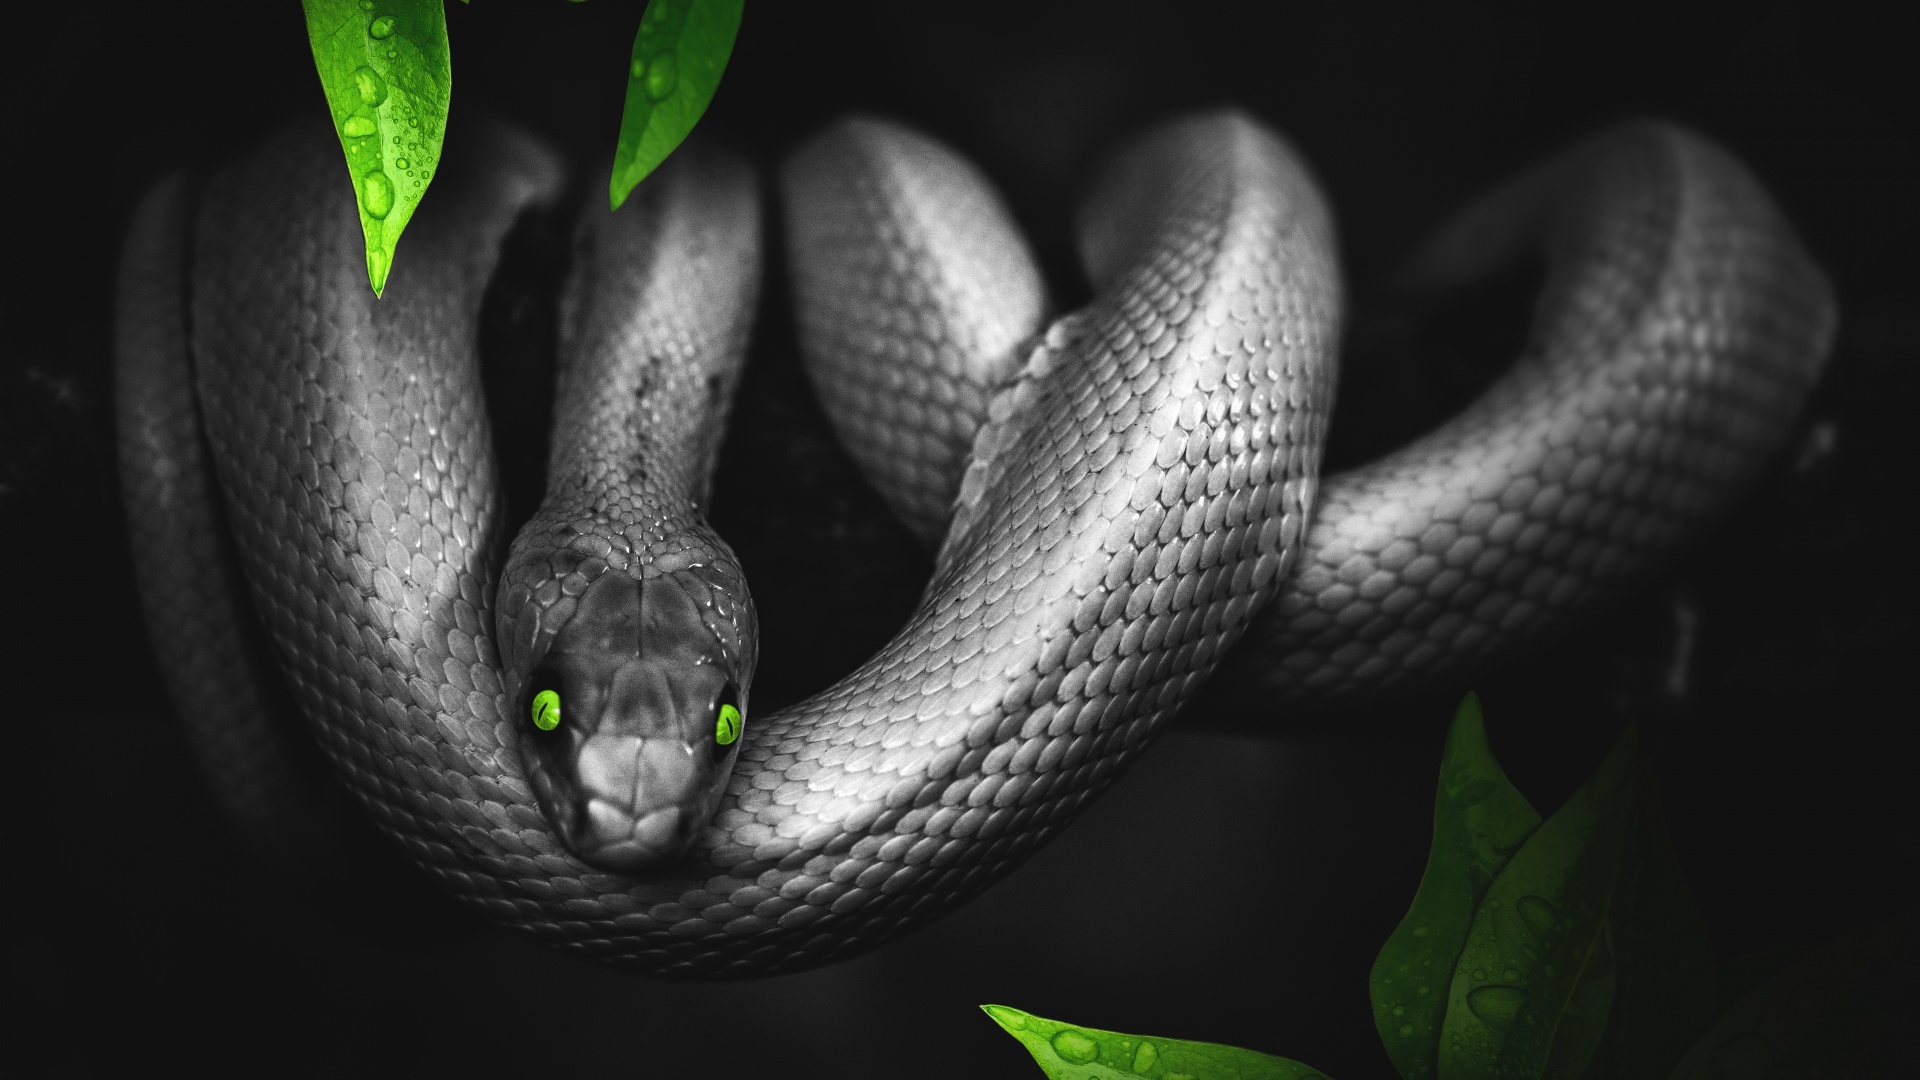 Green snake | Snake wallpaper, Snake images, Pet snake